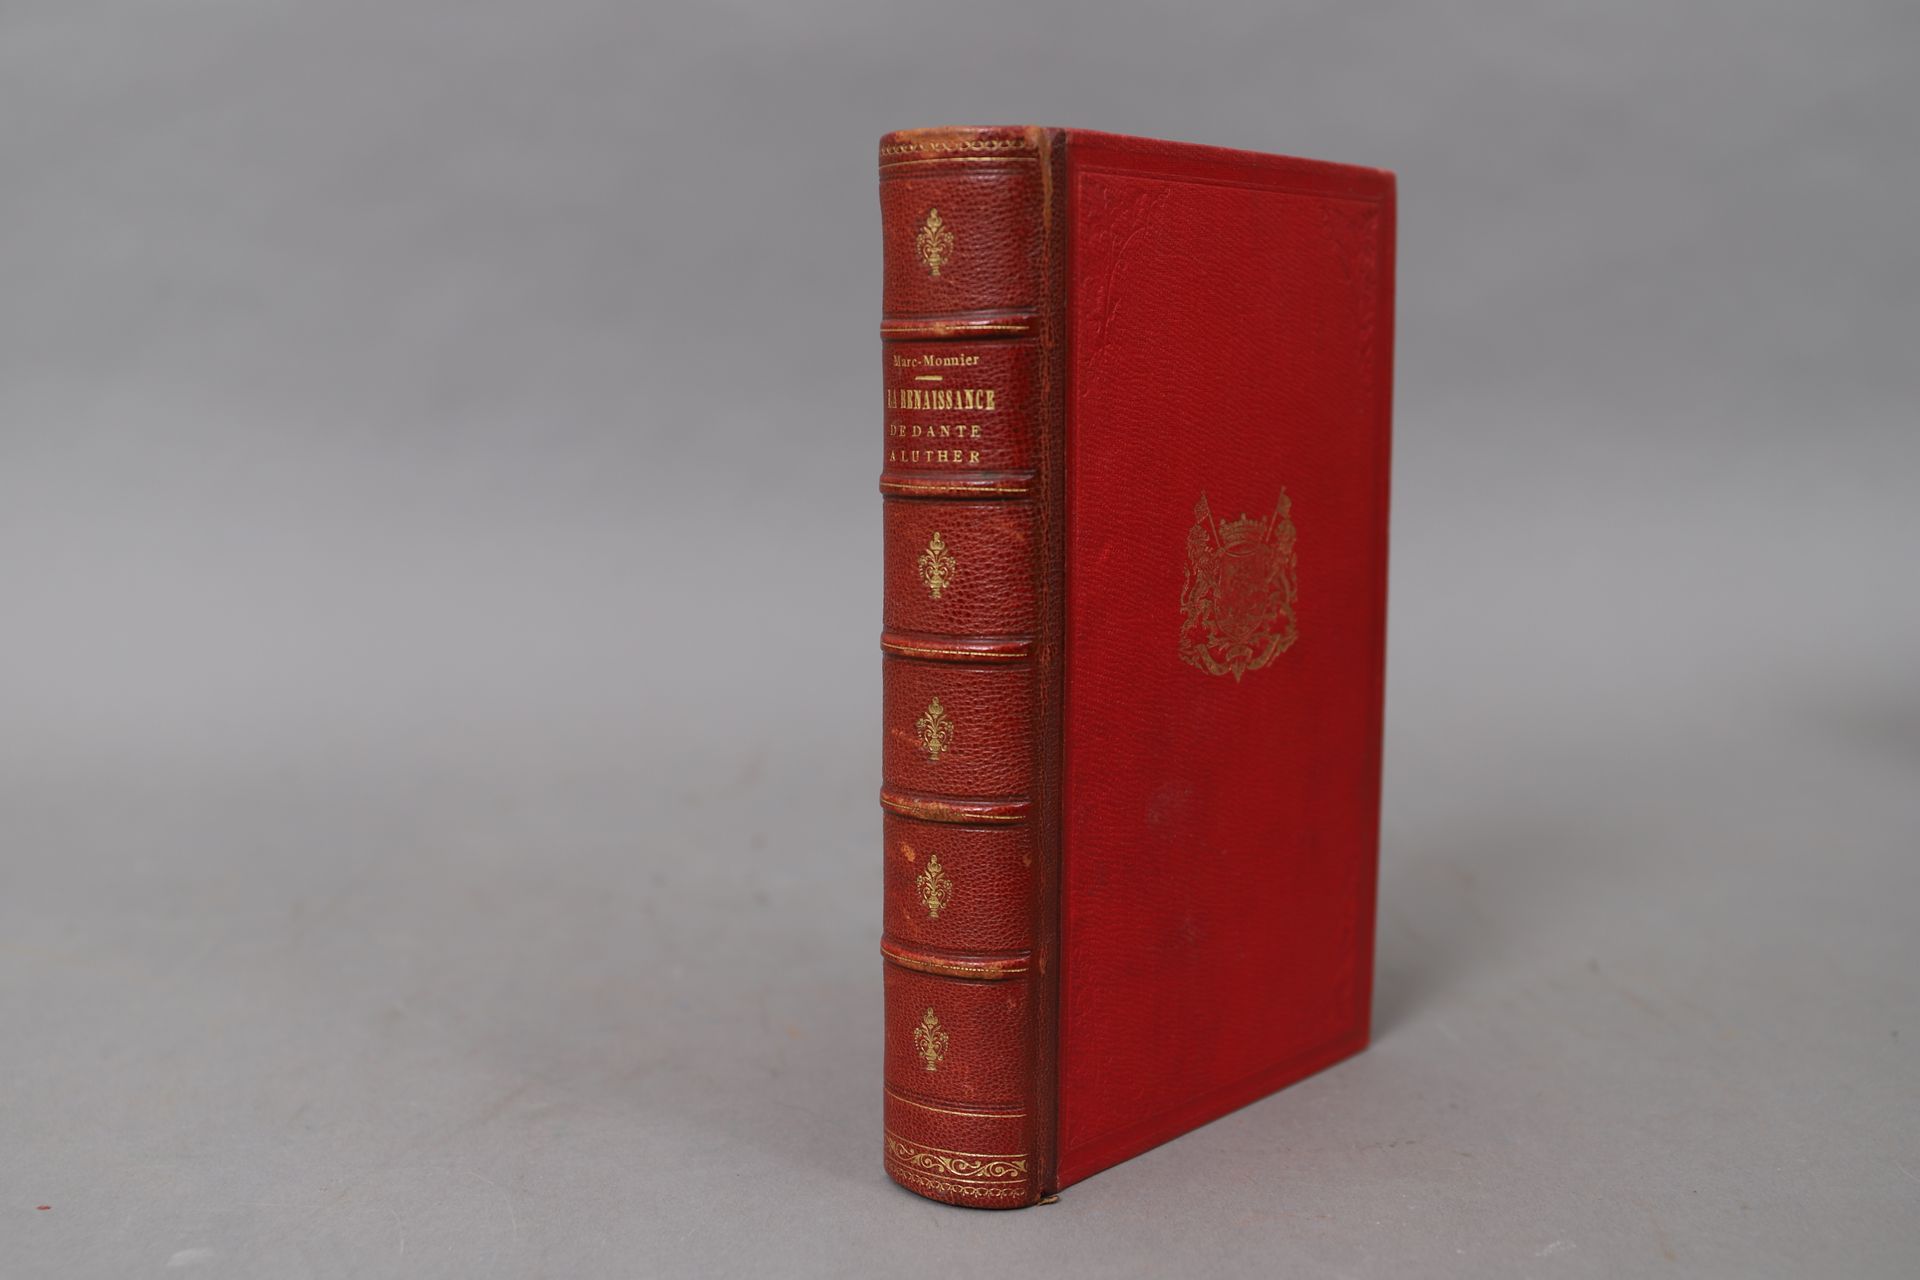 Null DIE RENAISSANCE von DANTE bis LUTHER.

1889, 

in halbem roten Chagrin gebu&hellip;